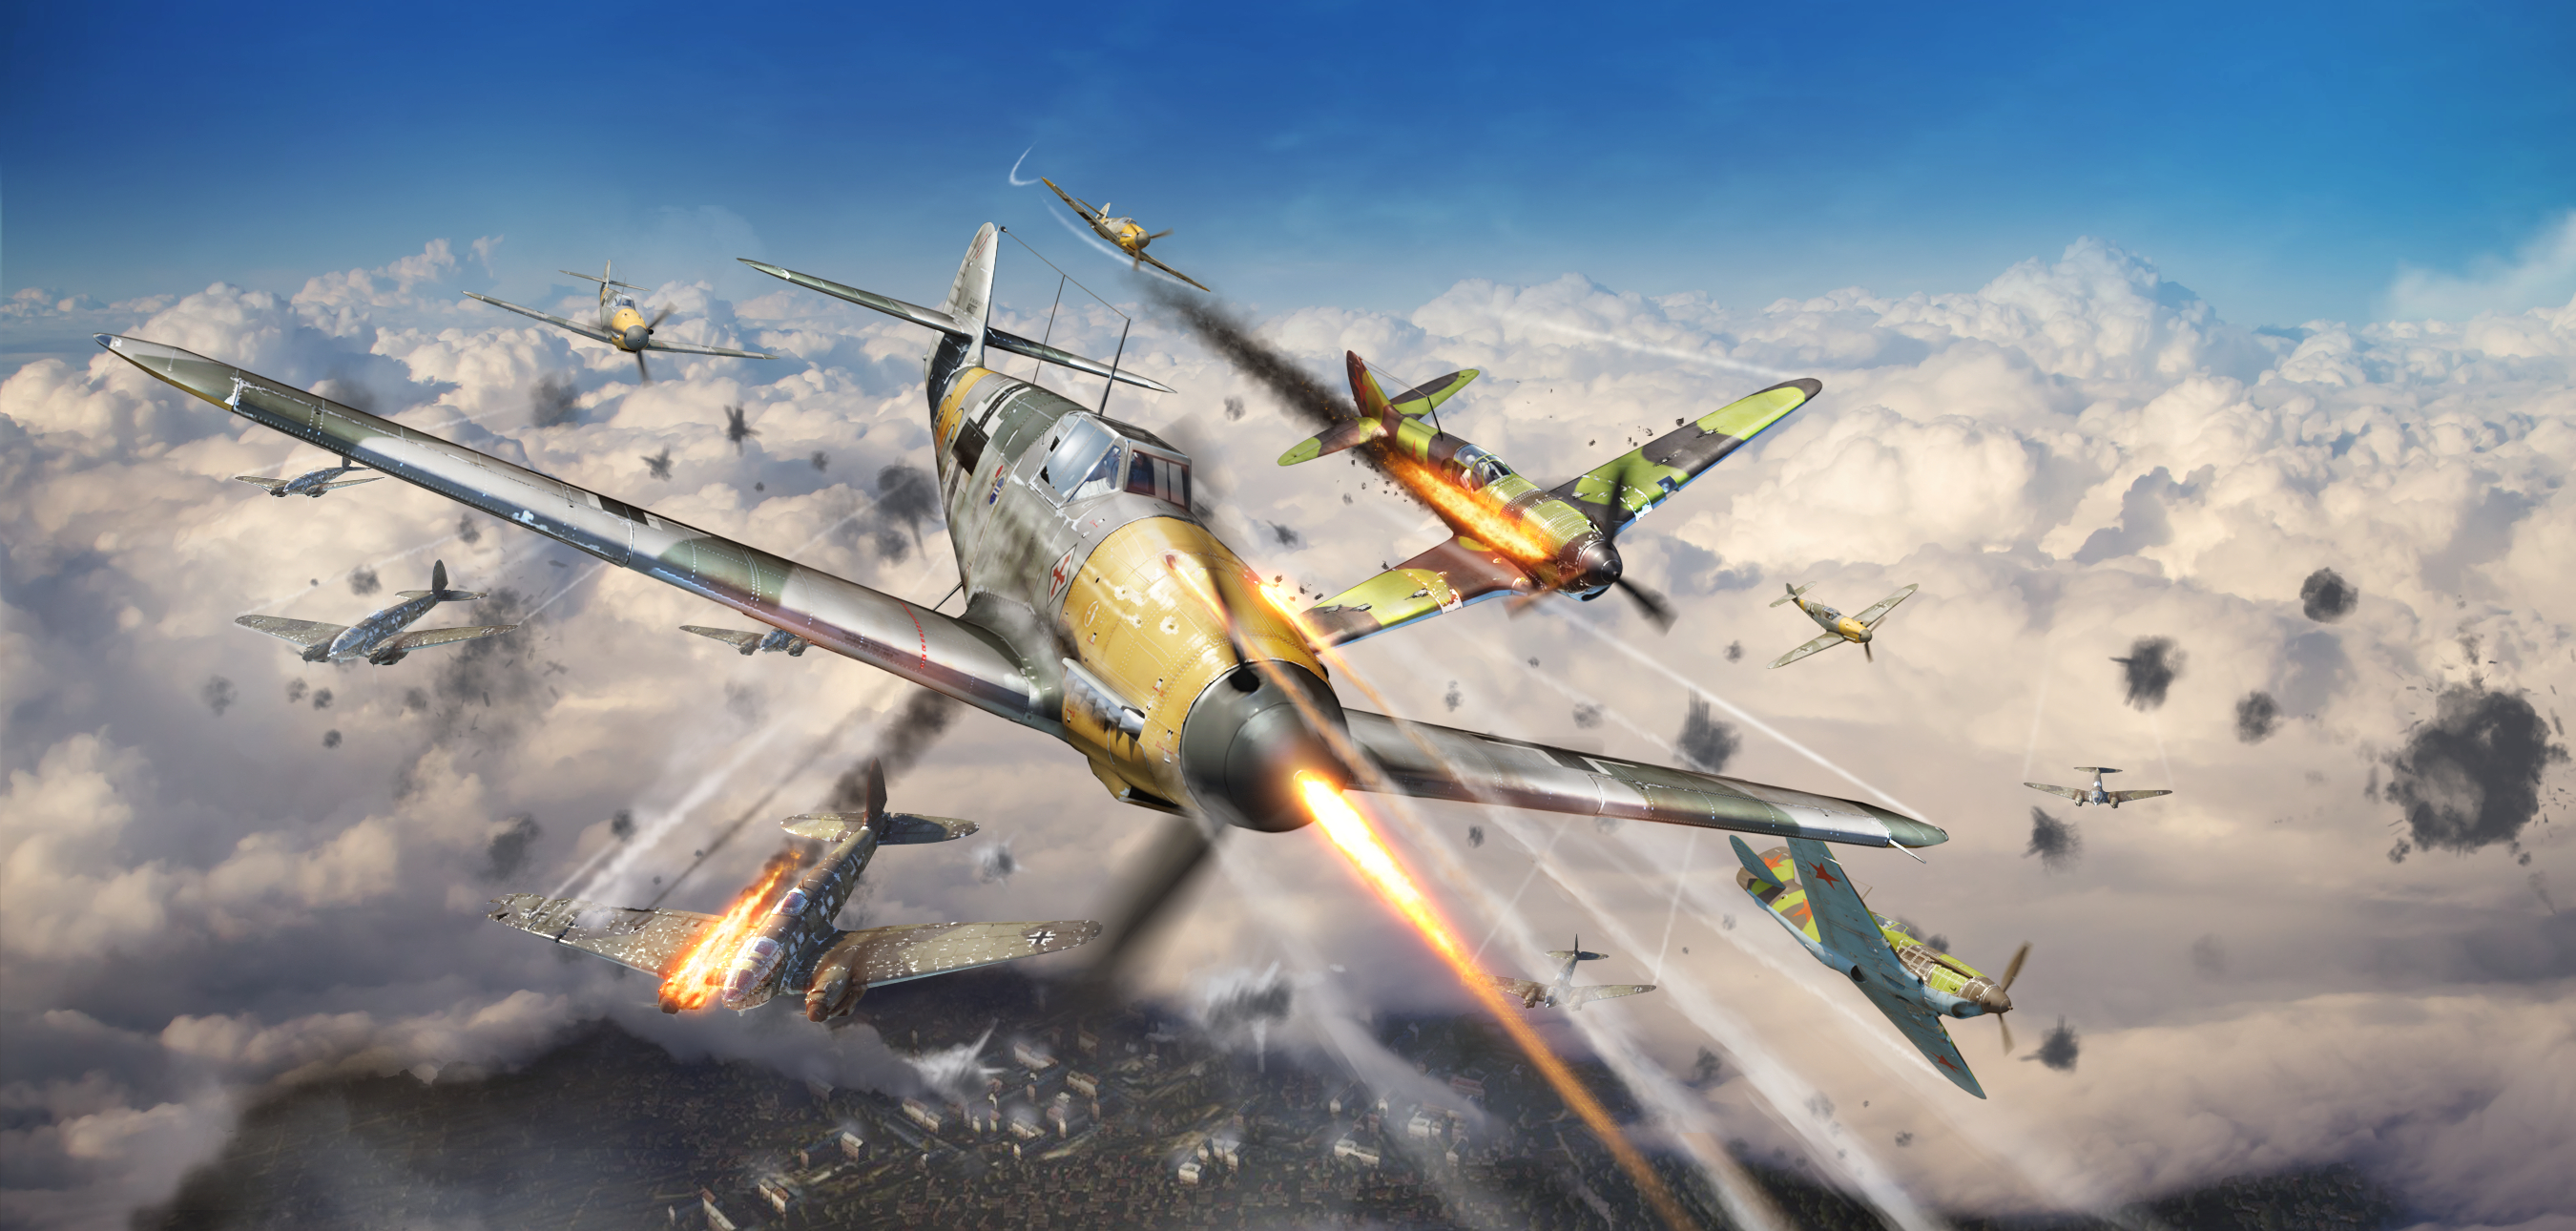 Aircraft Battle Cloud War Thunder Warplane 2700x1290